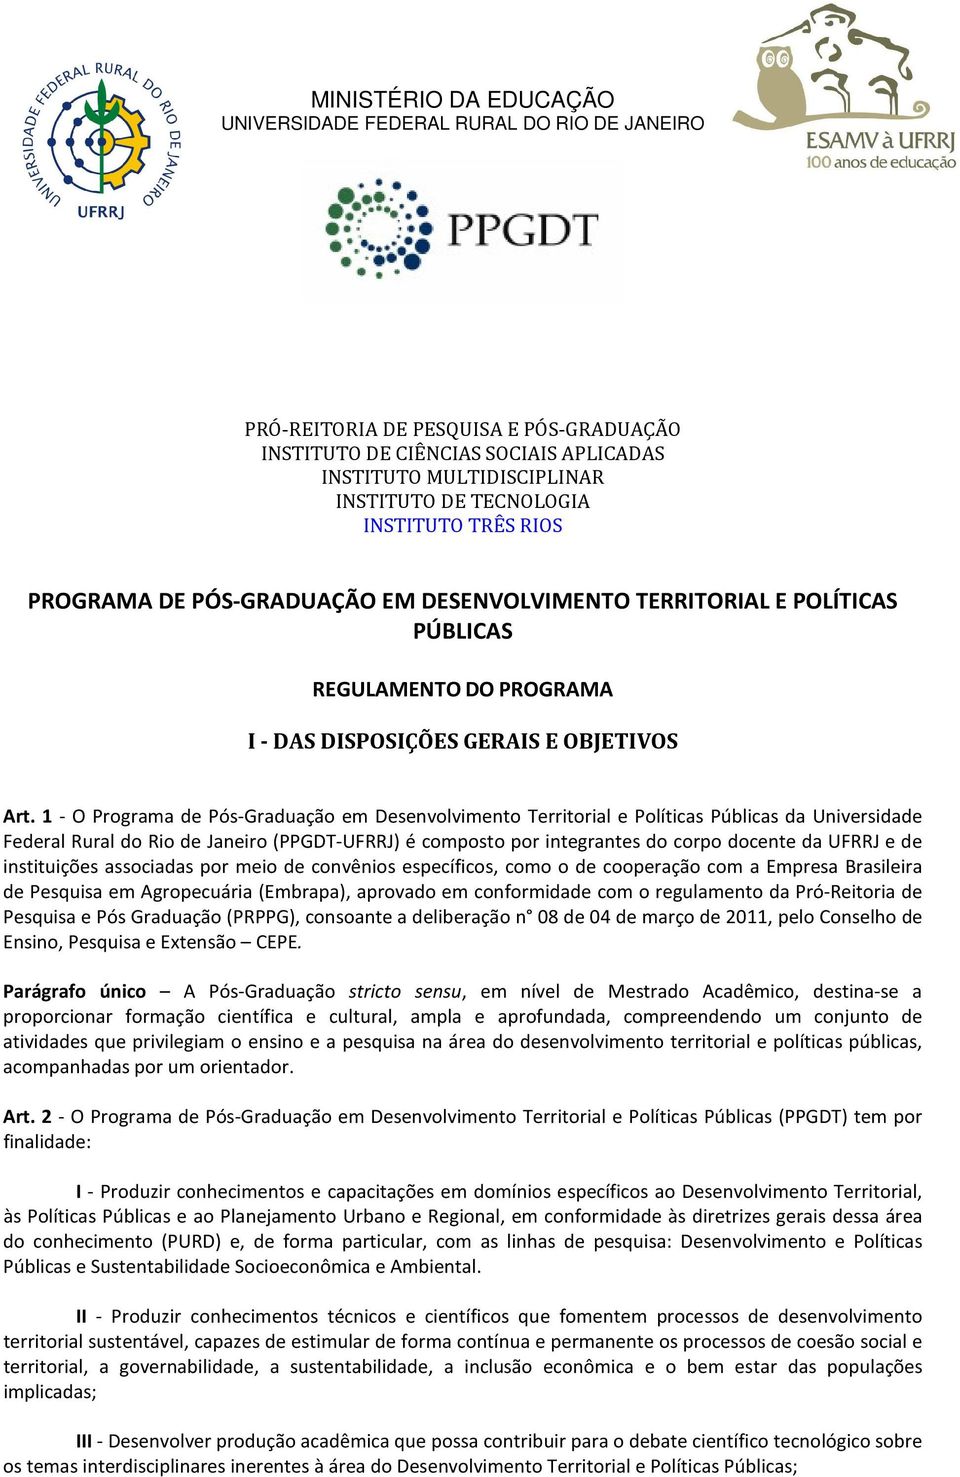 1 - O Programa de Pós-Graduação em Desenvolvimento Territorial e Políticas Públicas da Universidade Federal Rural do Rio de Janeiro (PPGDT-UFRRJ) é composto por integrantes do corpo docente da UFRRJ